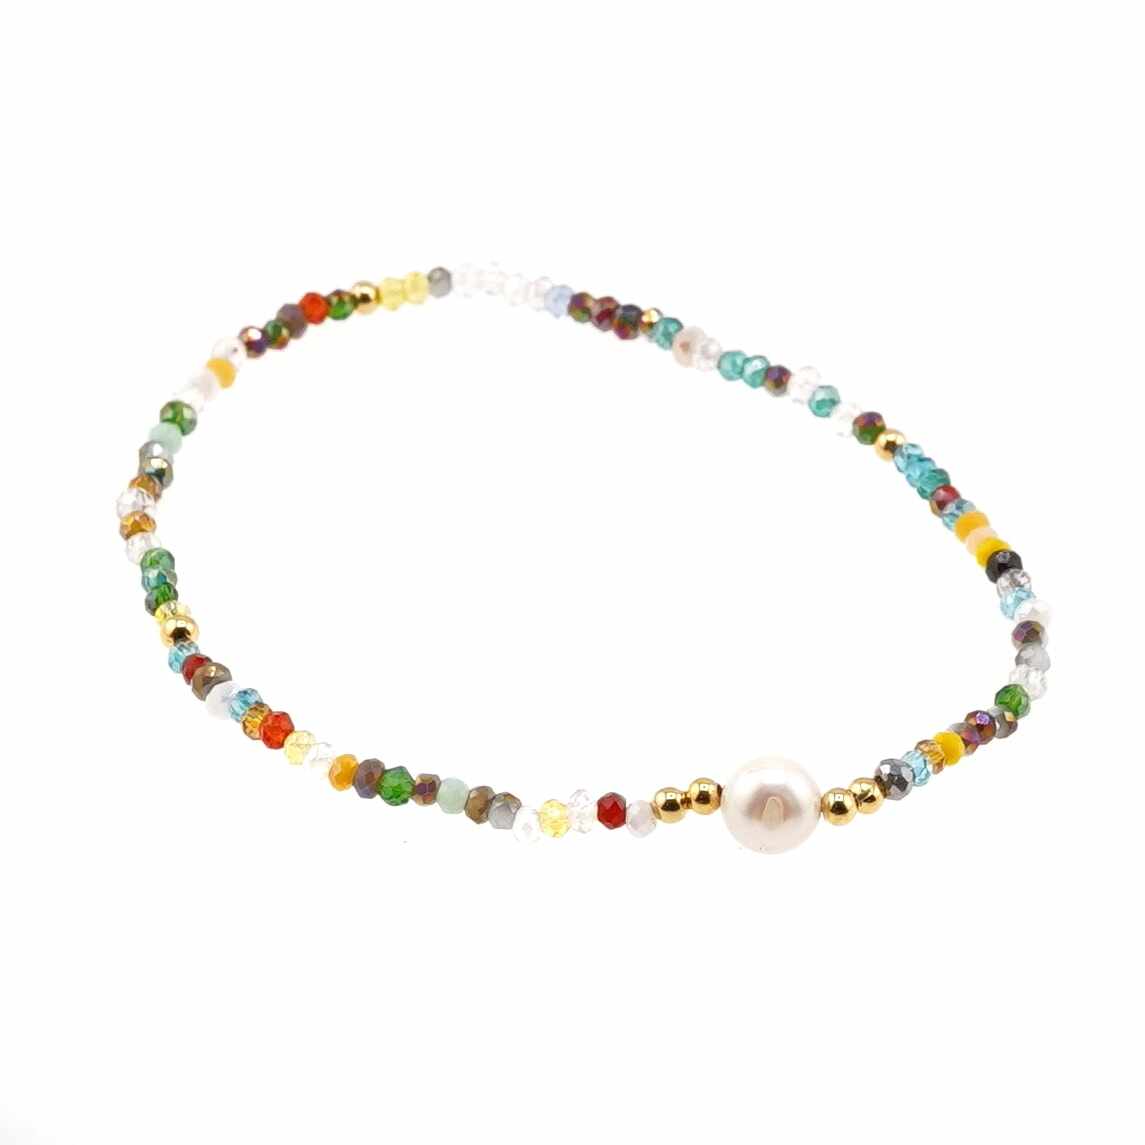 Bratara cu perla de cultura si cristale fatetate din sticla - multicolor model 1 19cm